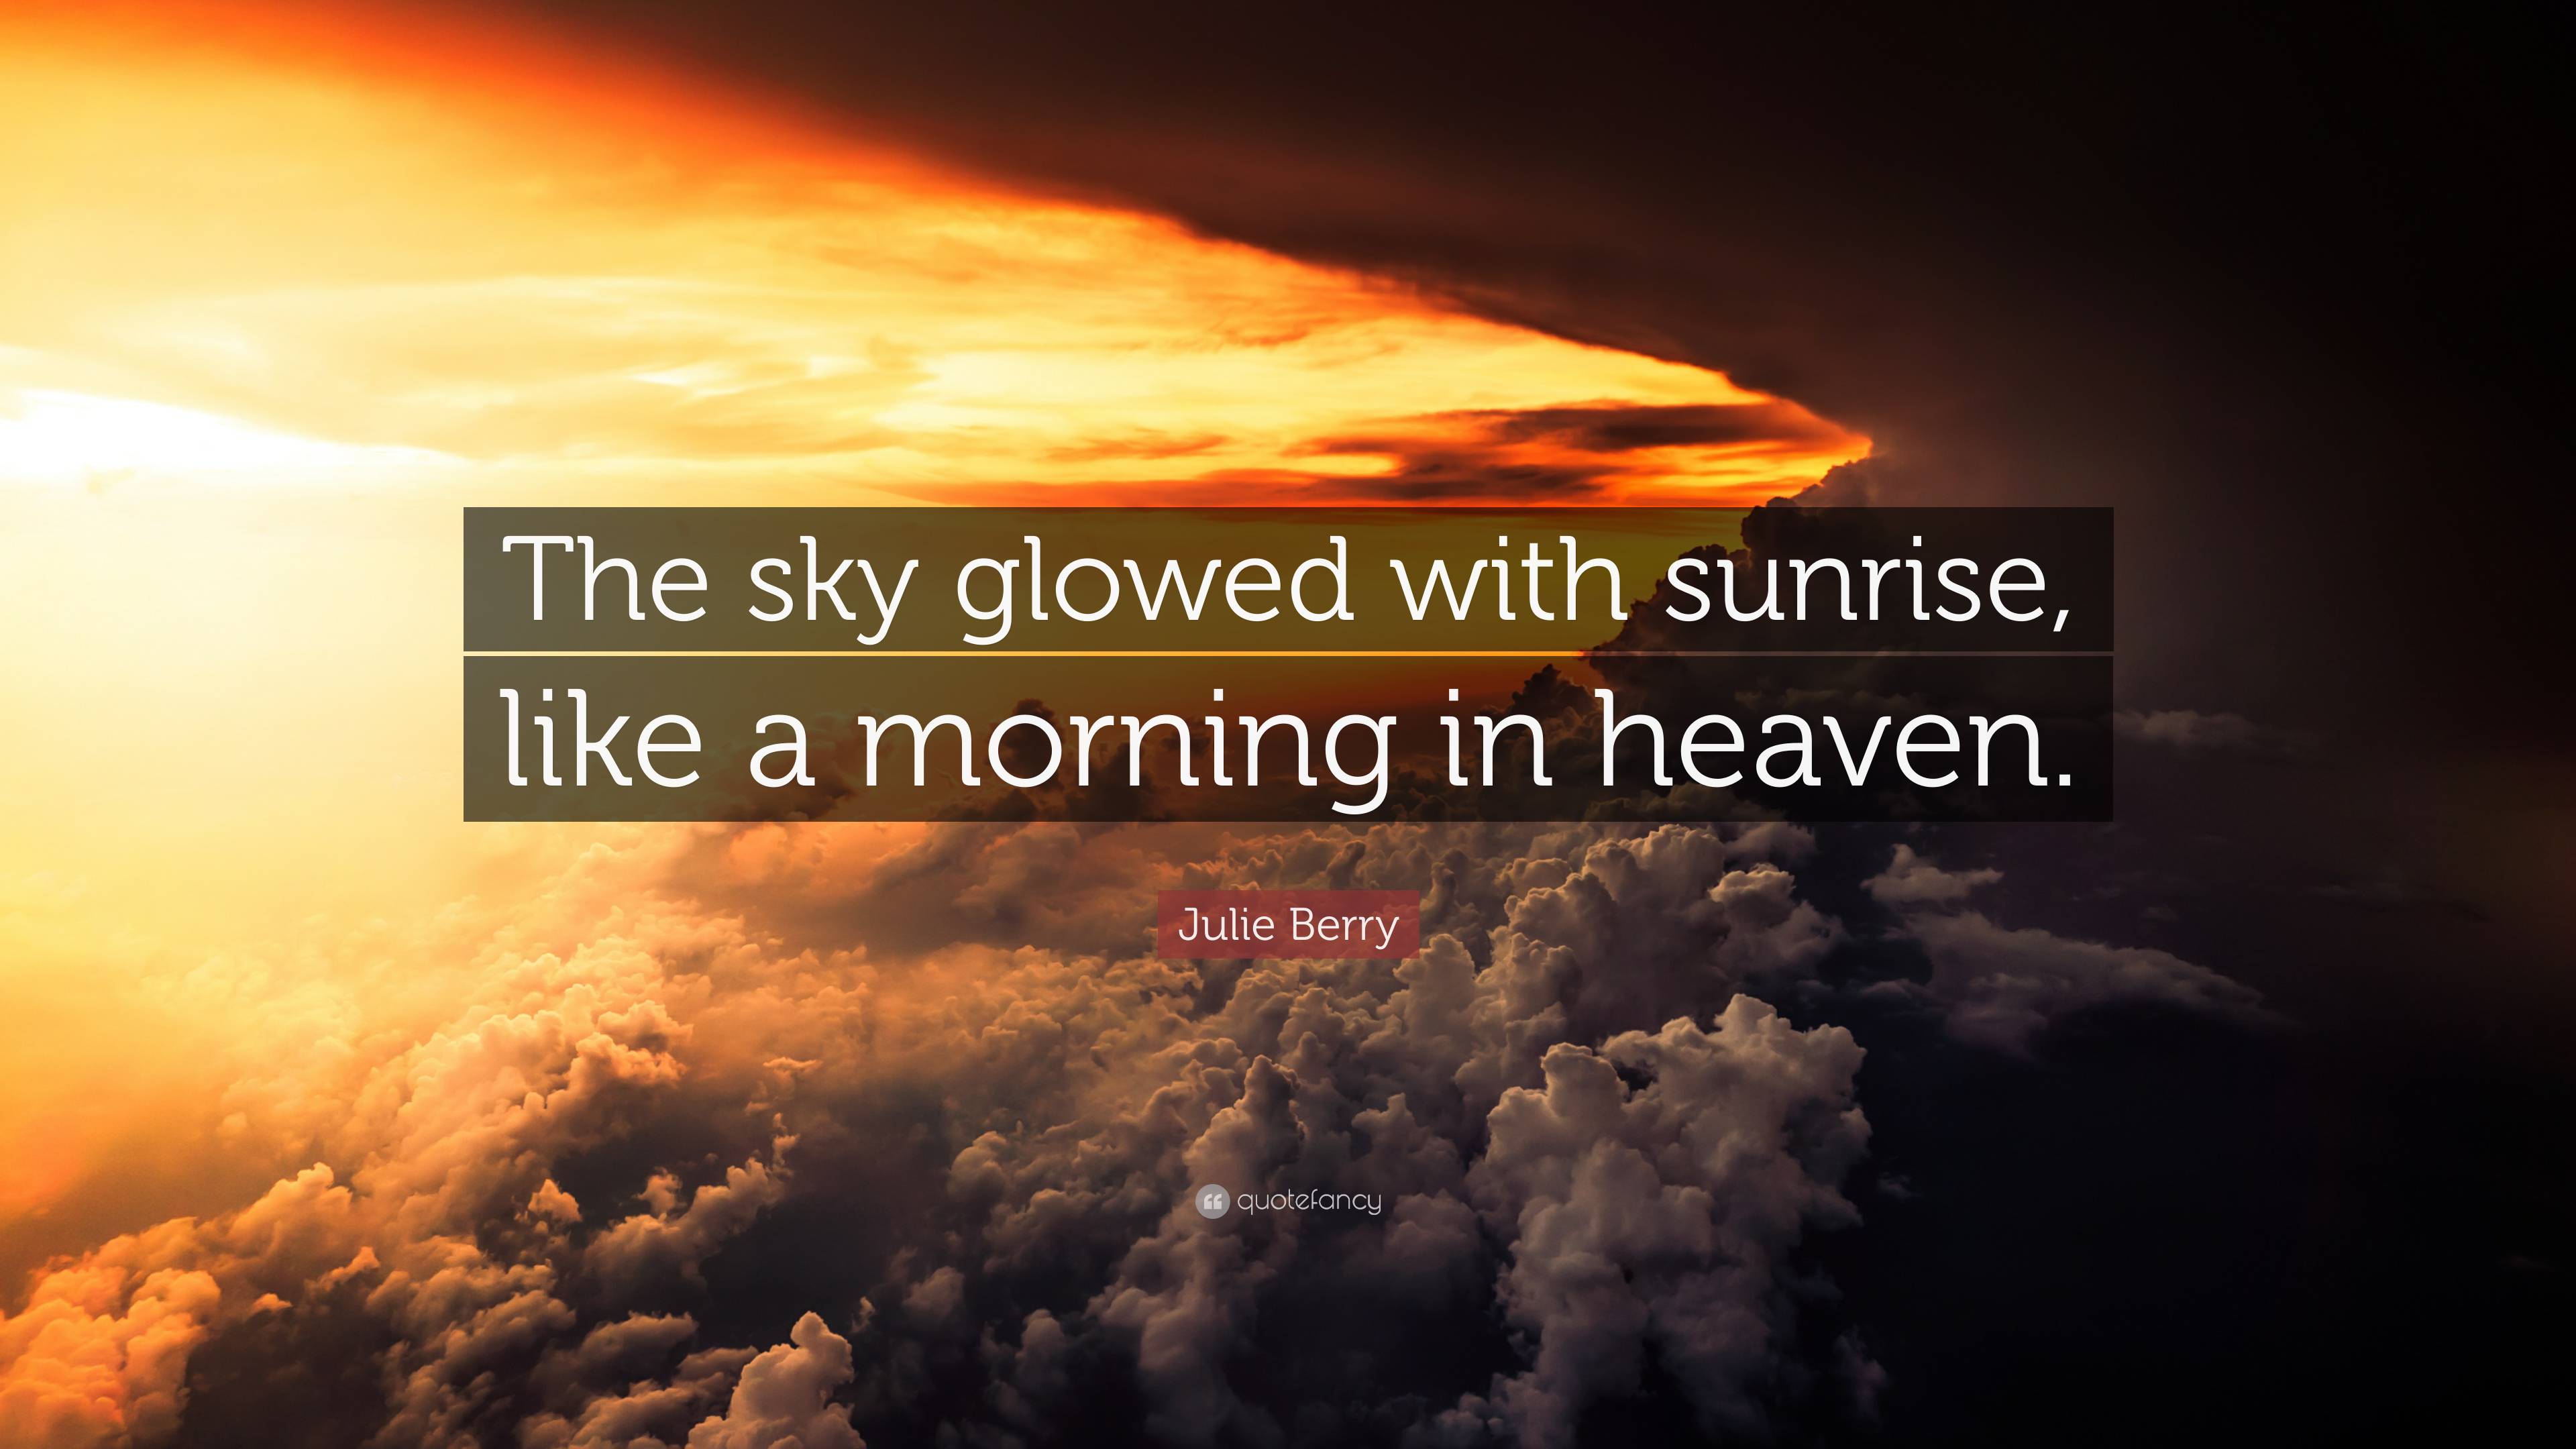 Qual a diferença entre Heaven e Sky?